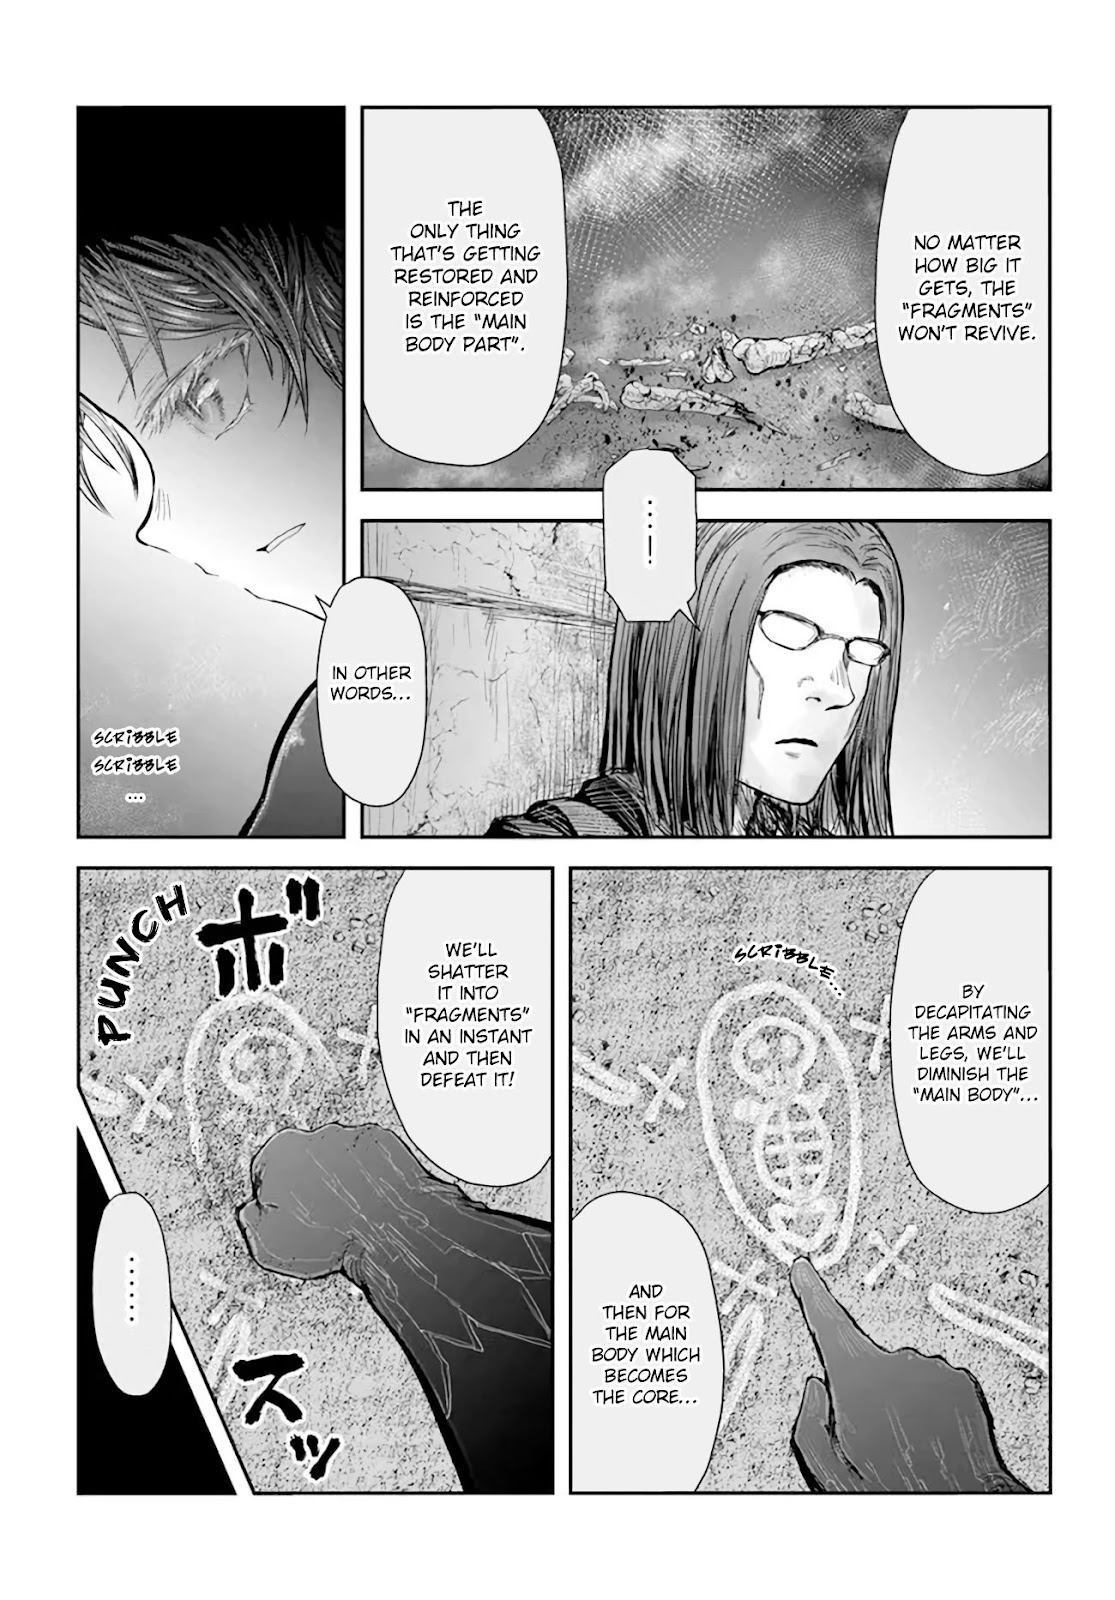 Isekai Ojisan, Chapter 43 - Isekai Ojisan Manga Online